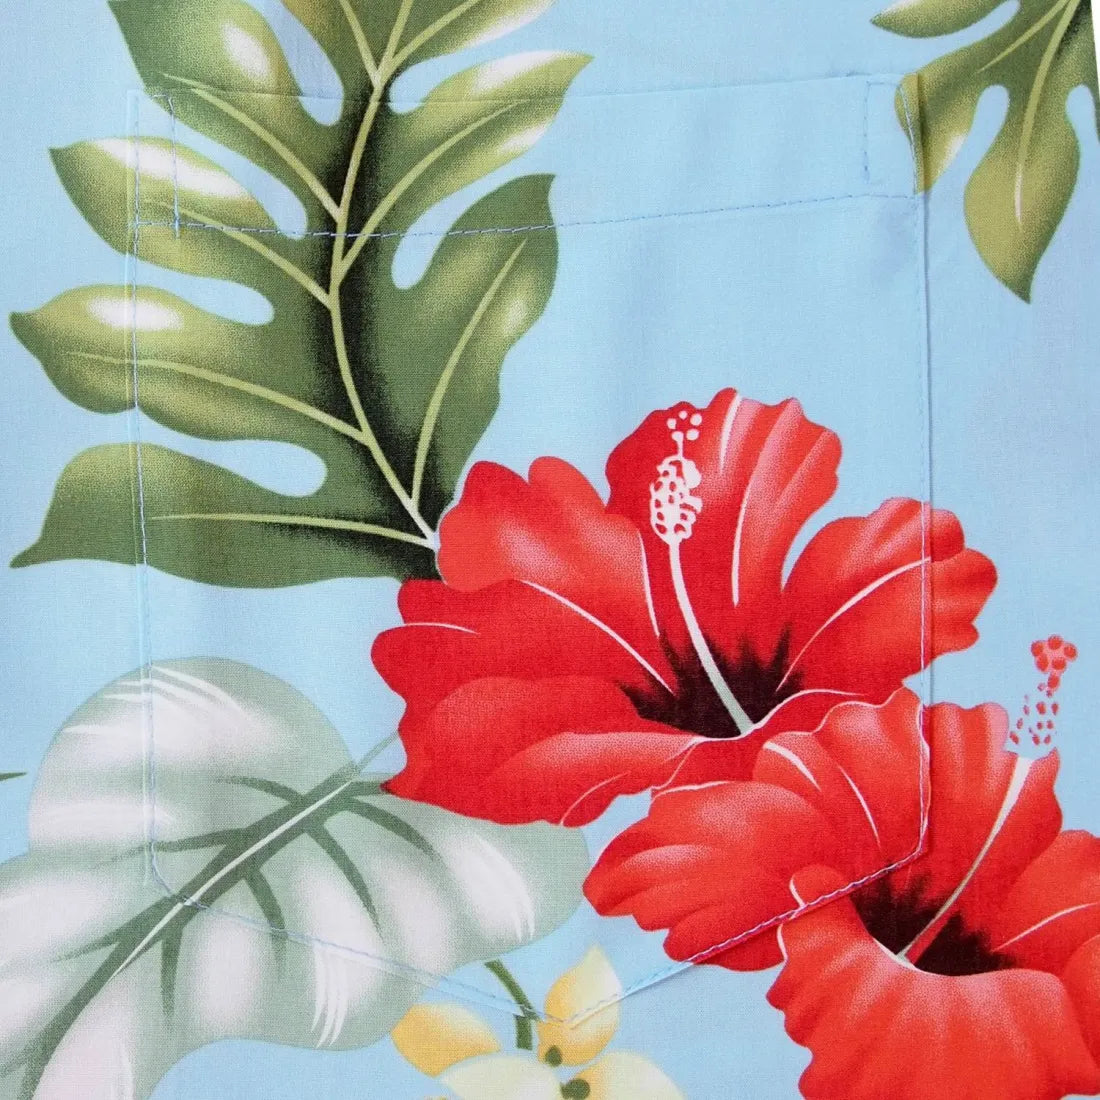 Honeymoon Blue Hawaiian Rayon Shirt - Made In Hawaii